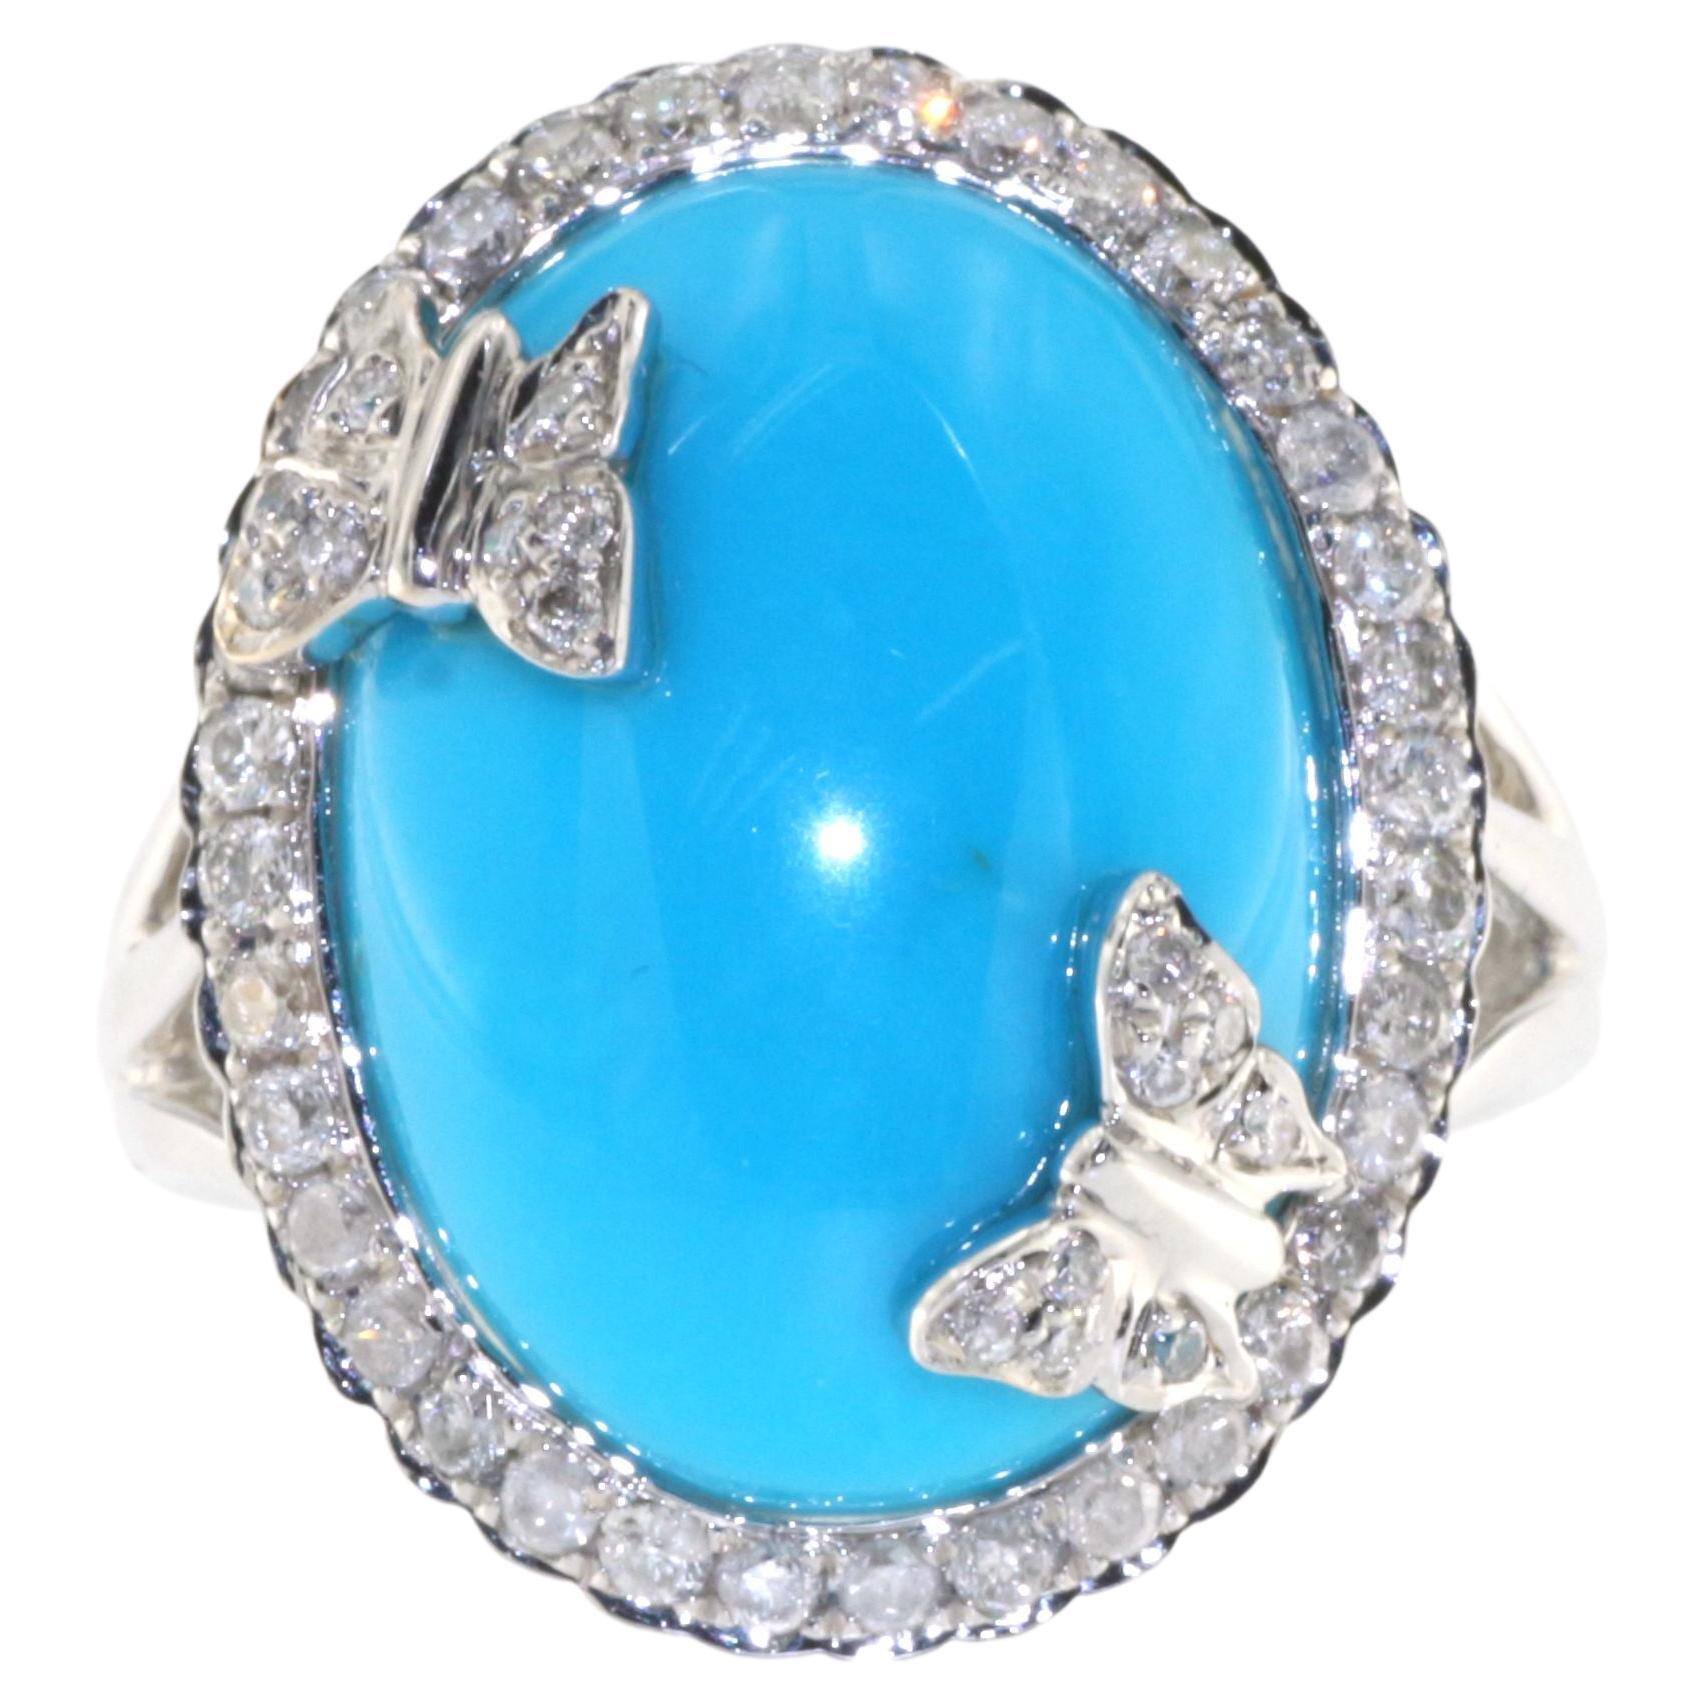 Turquoise Diamond Cocktail Ring in 18 Karat White Gold